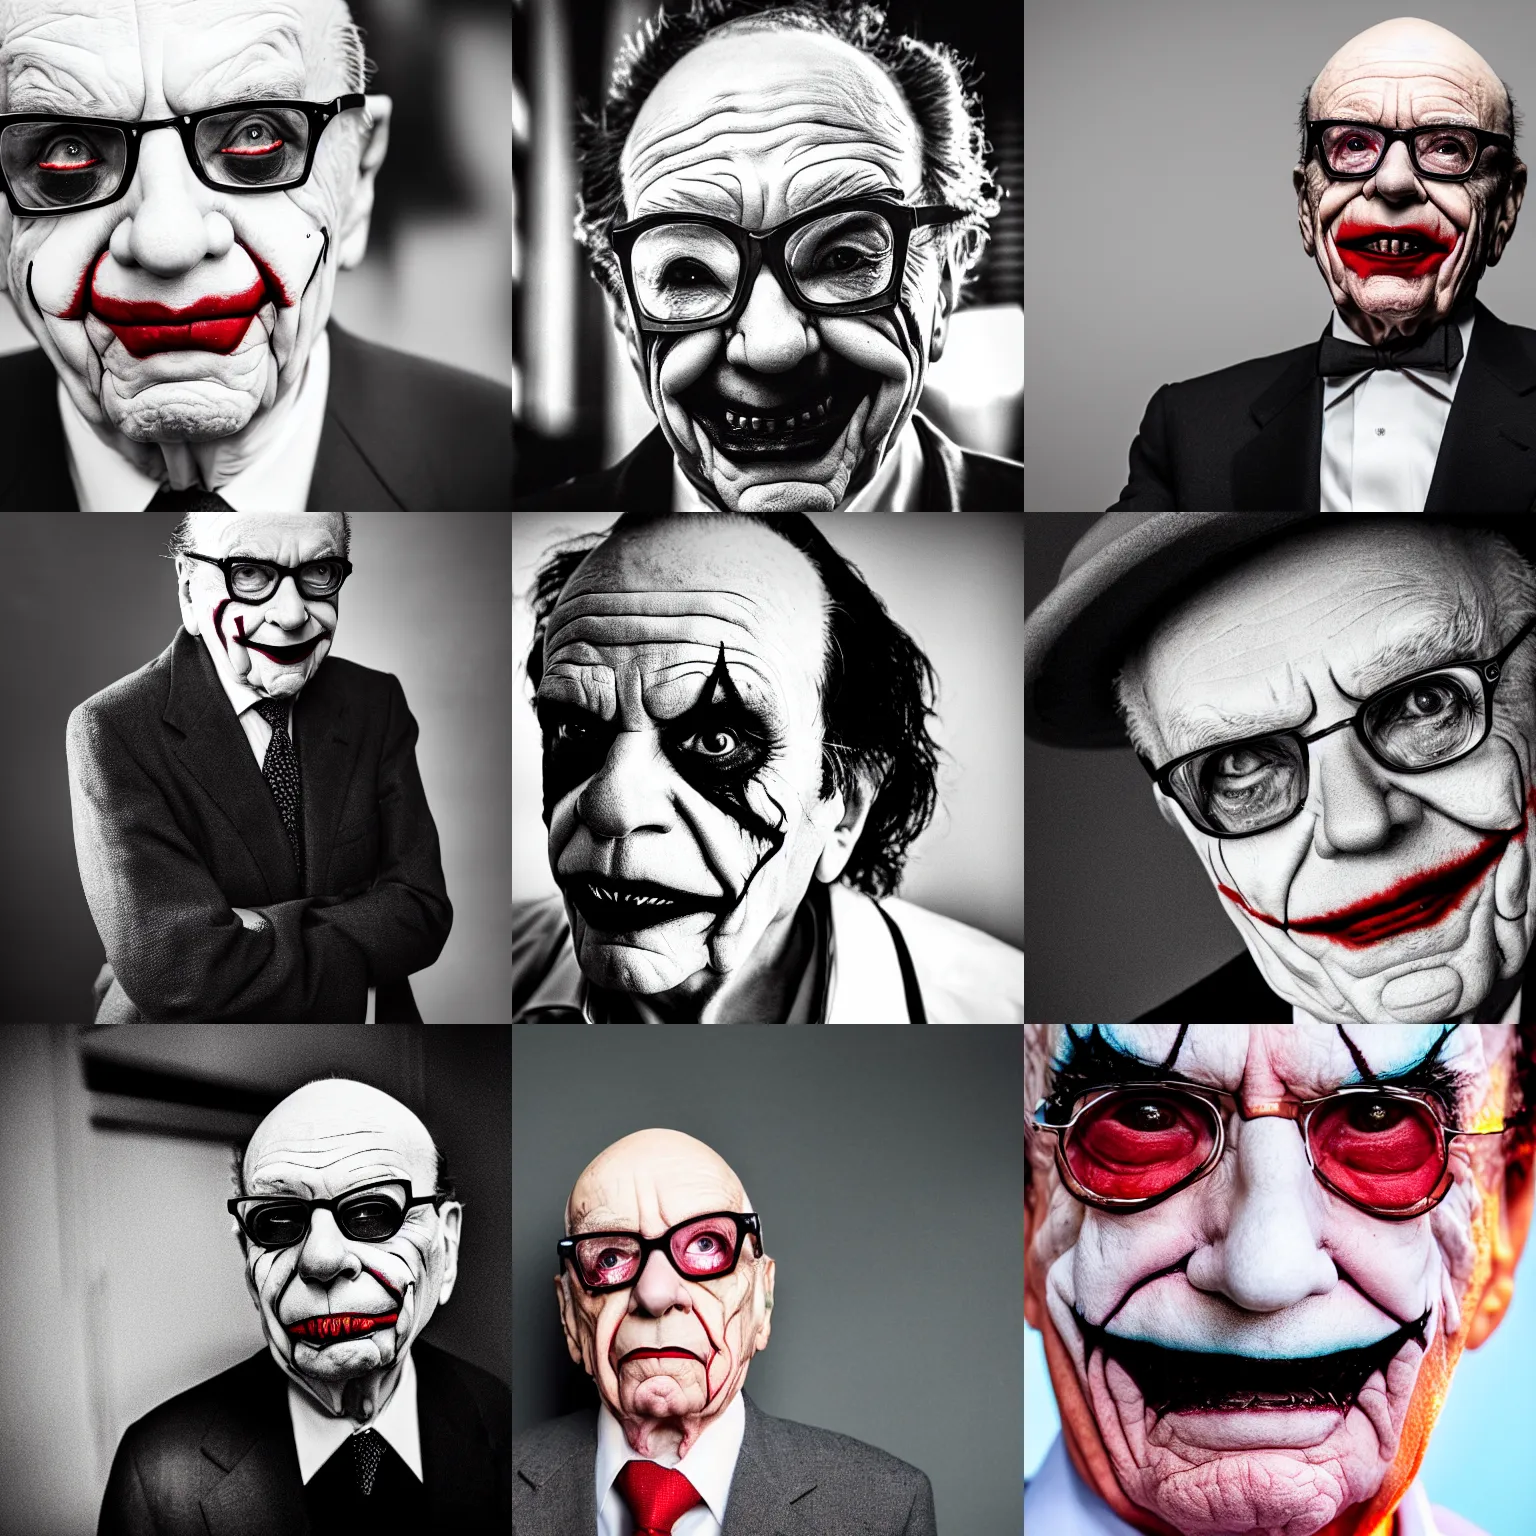 Prompt: Rupert Murdoch as the joker, Rupert Murdoch, joker makeup, portrait photography, depth of field, bokeh